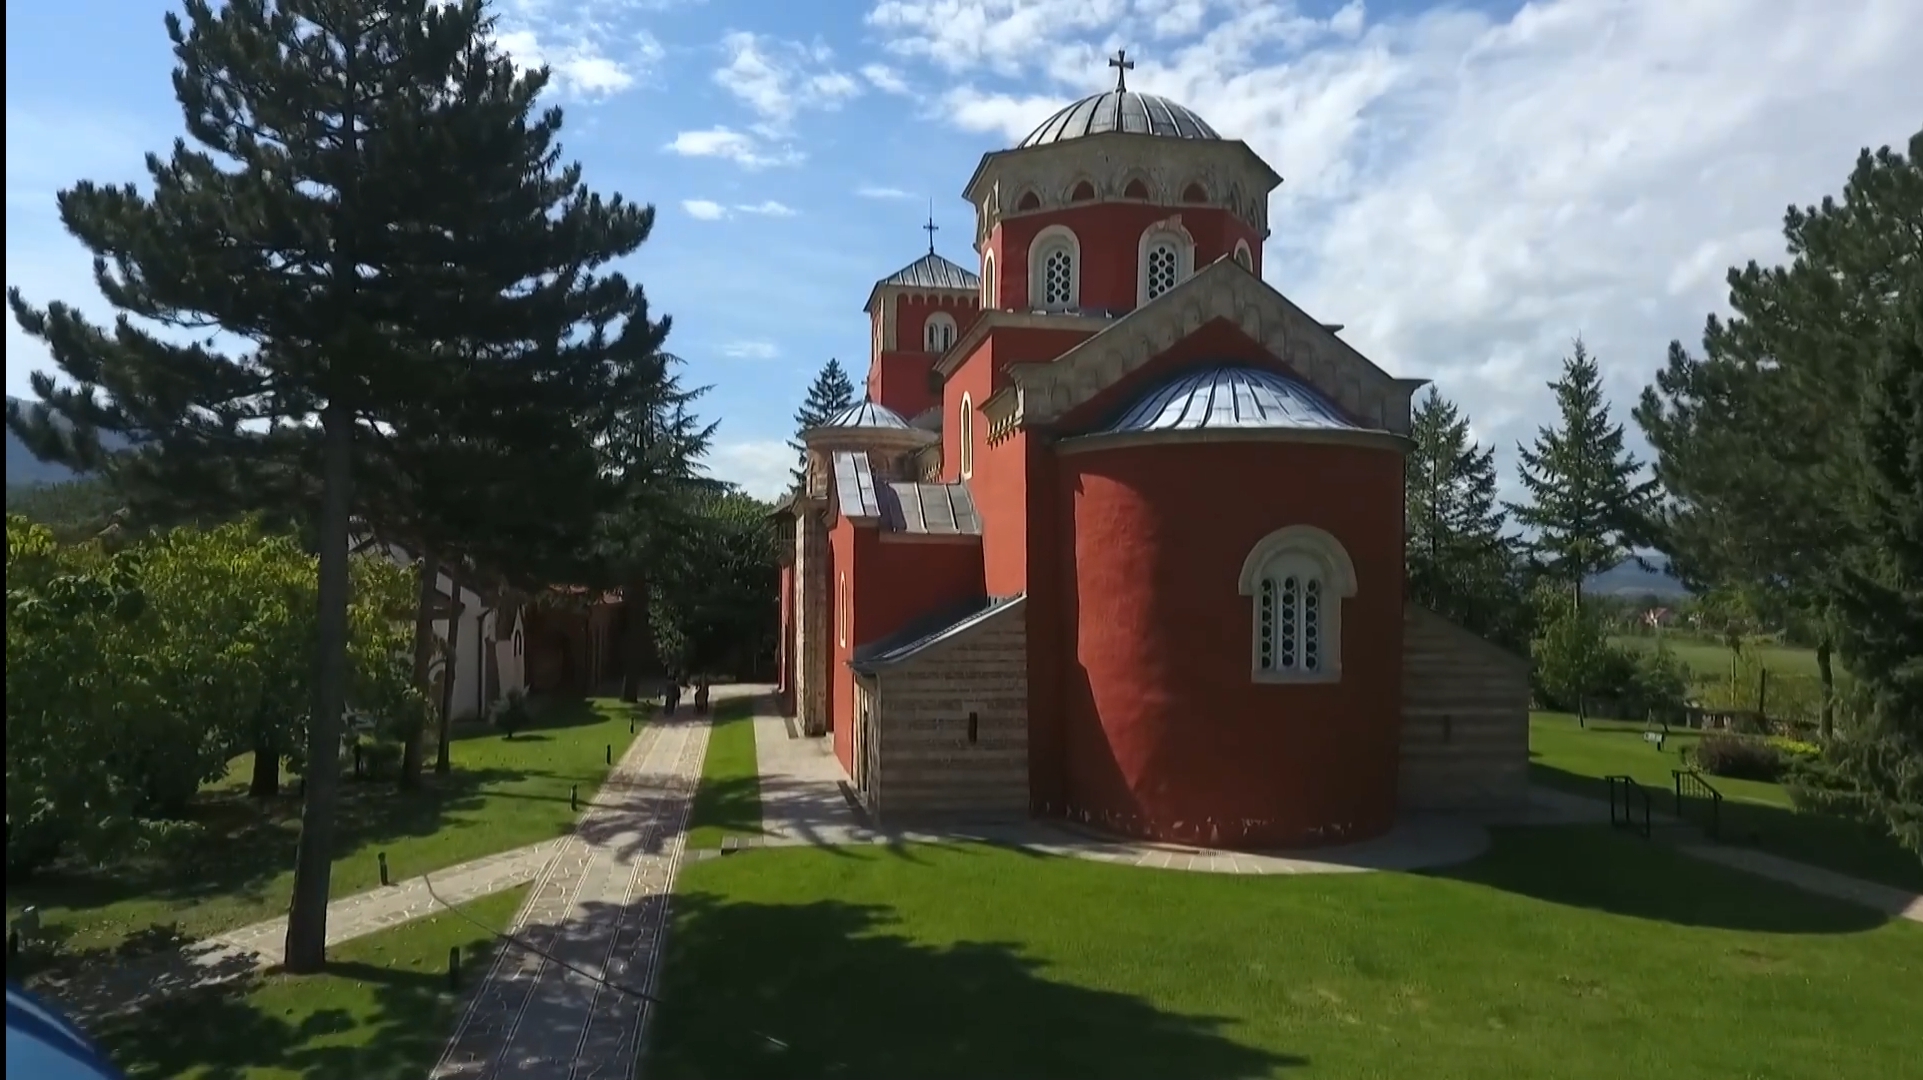 ☦️ манастир Жича - историја и живот у овом древном манастиру (Србија)